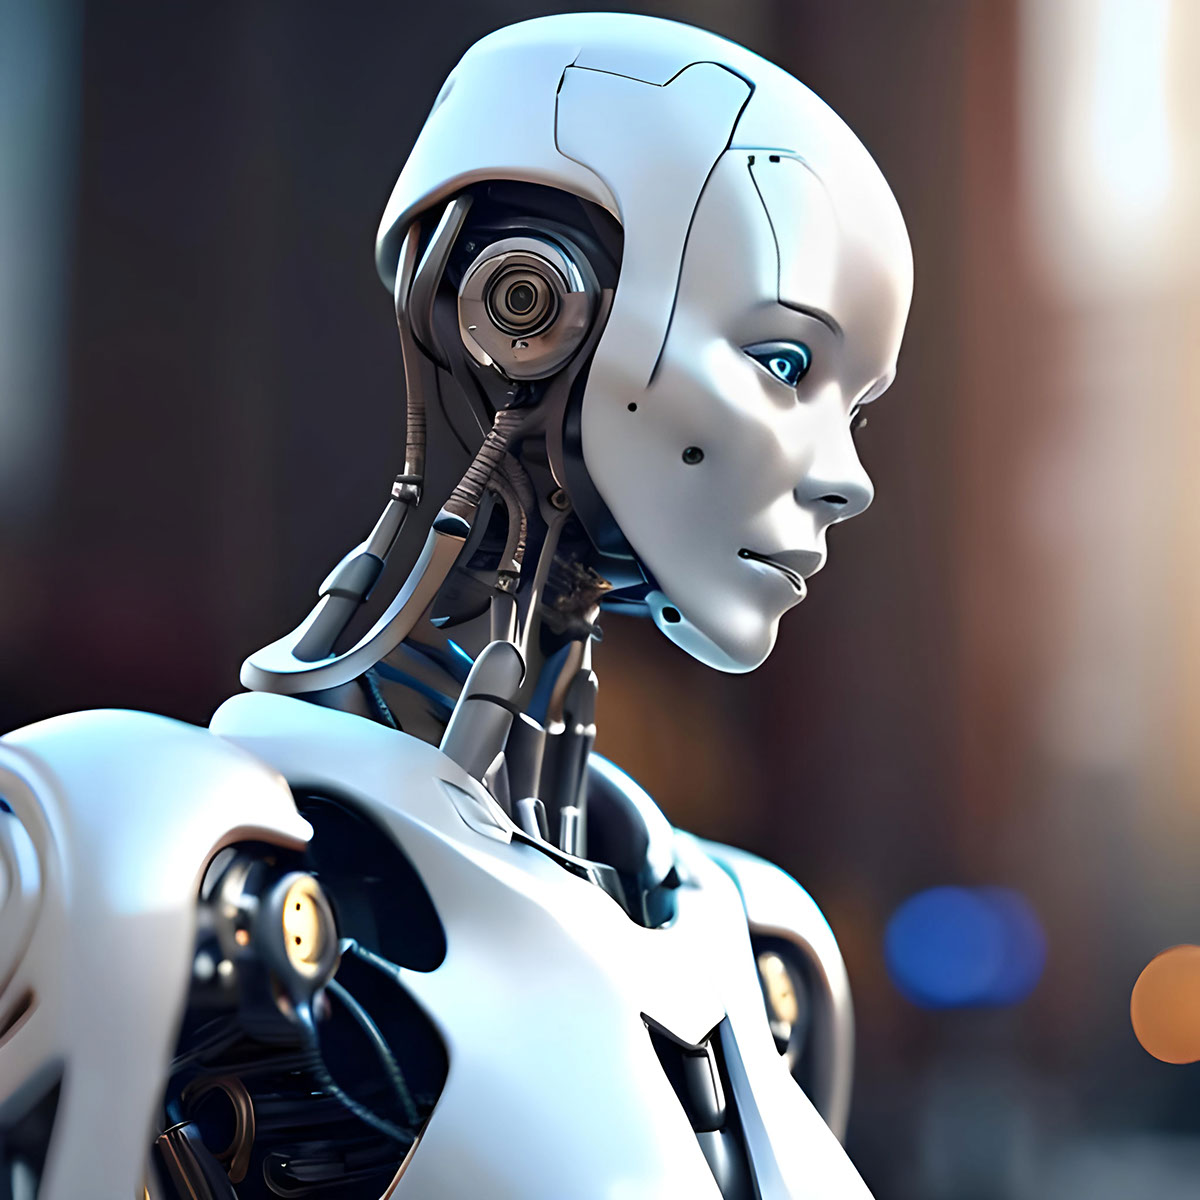 Humanoid robot rendition image